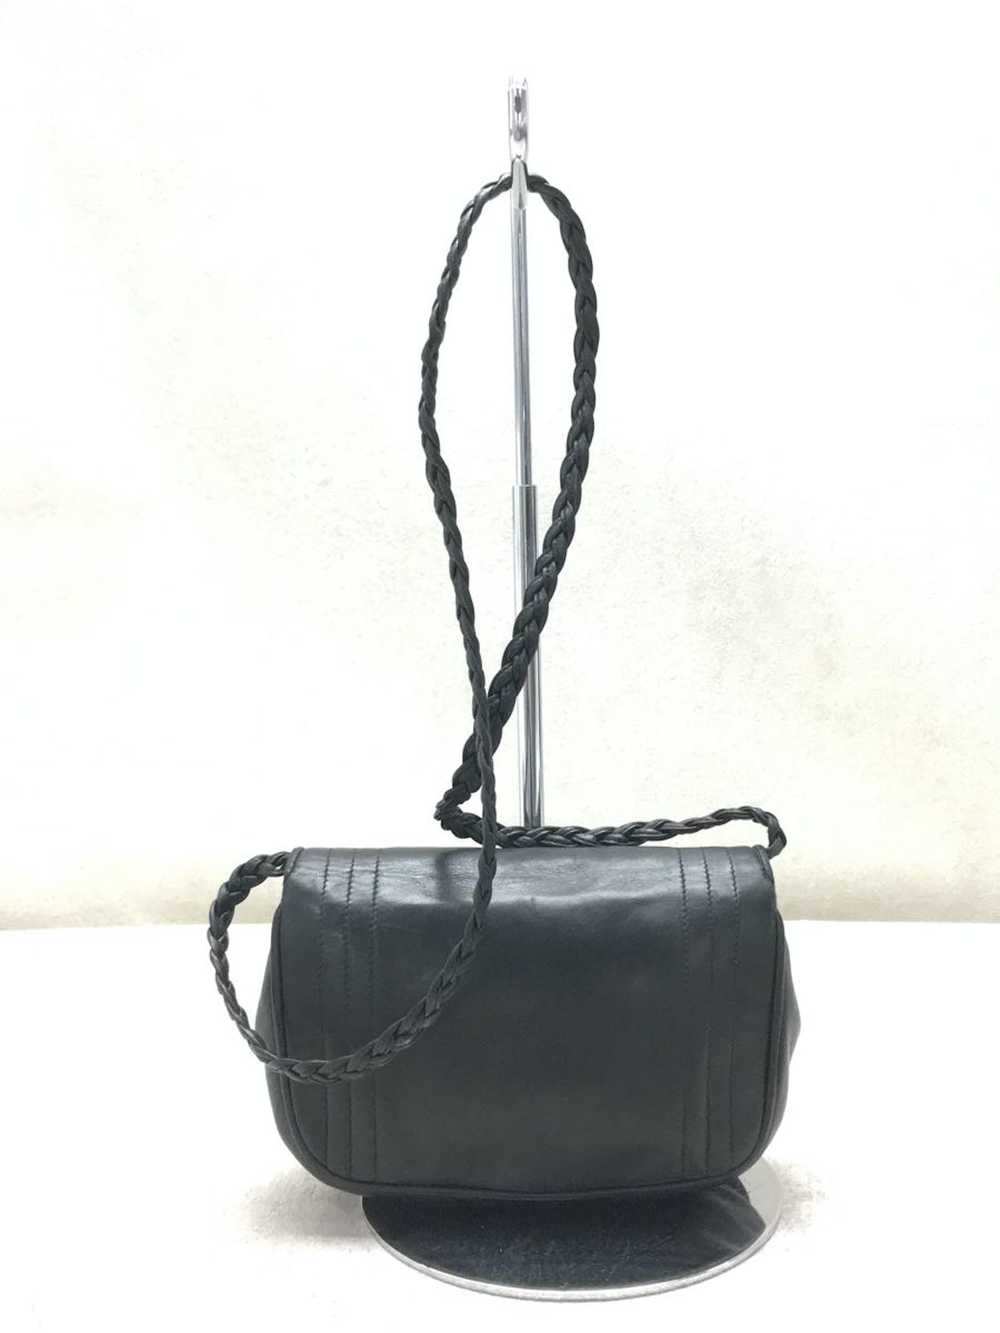 Chanel Chanel Leather Shoulder Bag - image 3